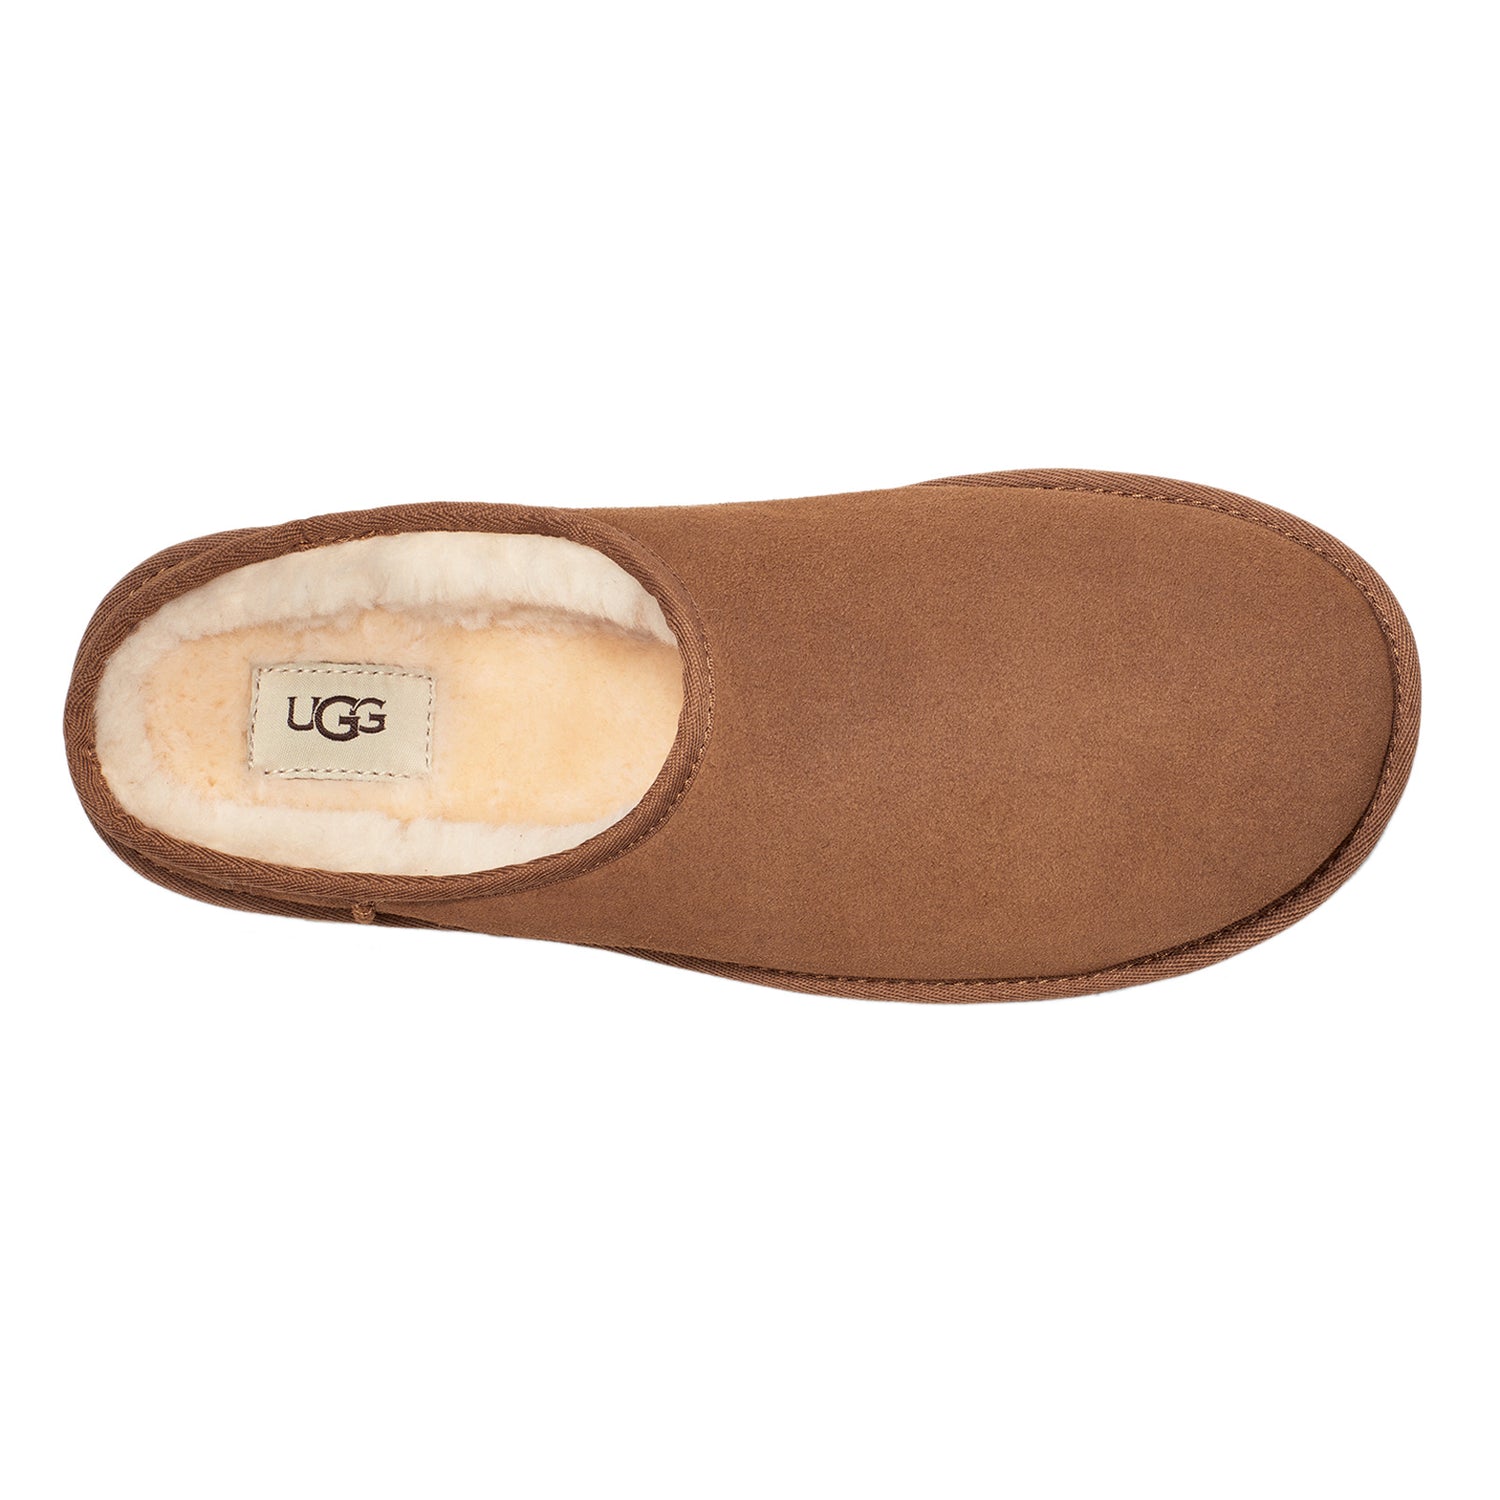 Peltz Shoes  Men's Ugg Classic Slip-On Slipper Chestnut 1129290-CHE